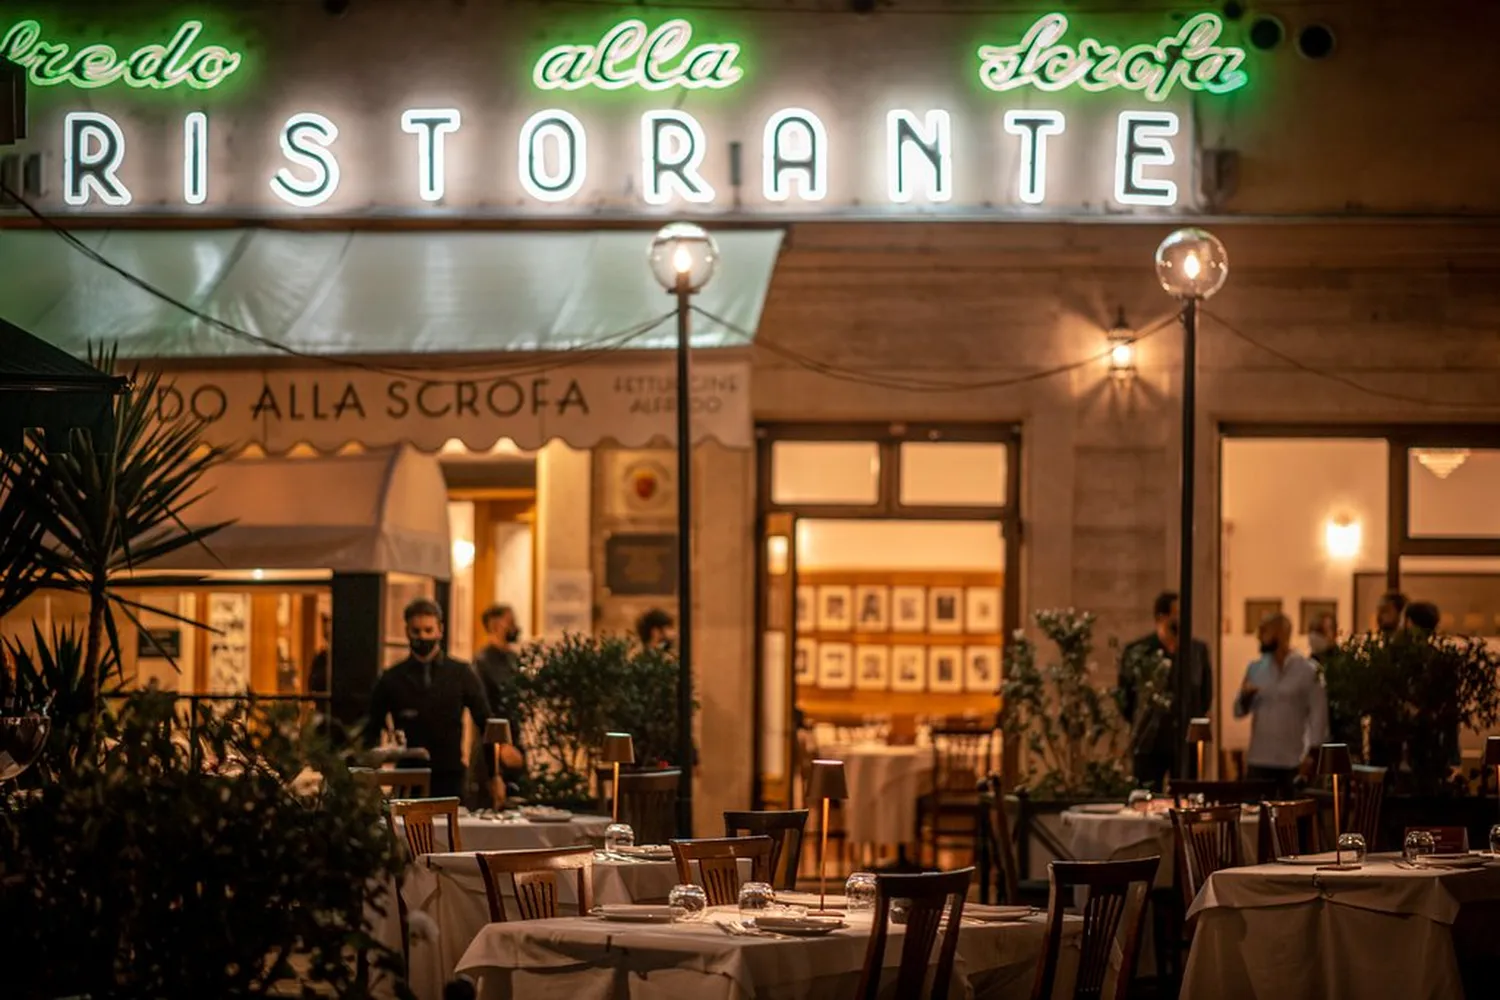 ALFREDO ALLA SCROFA Restaurant Roma